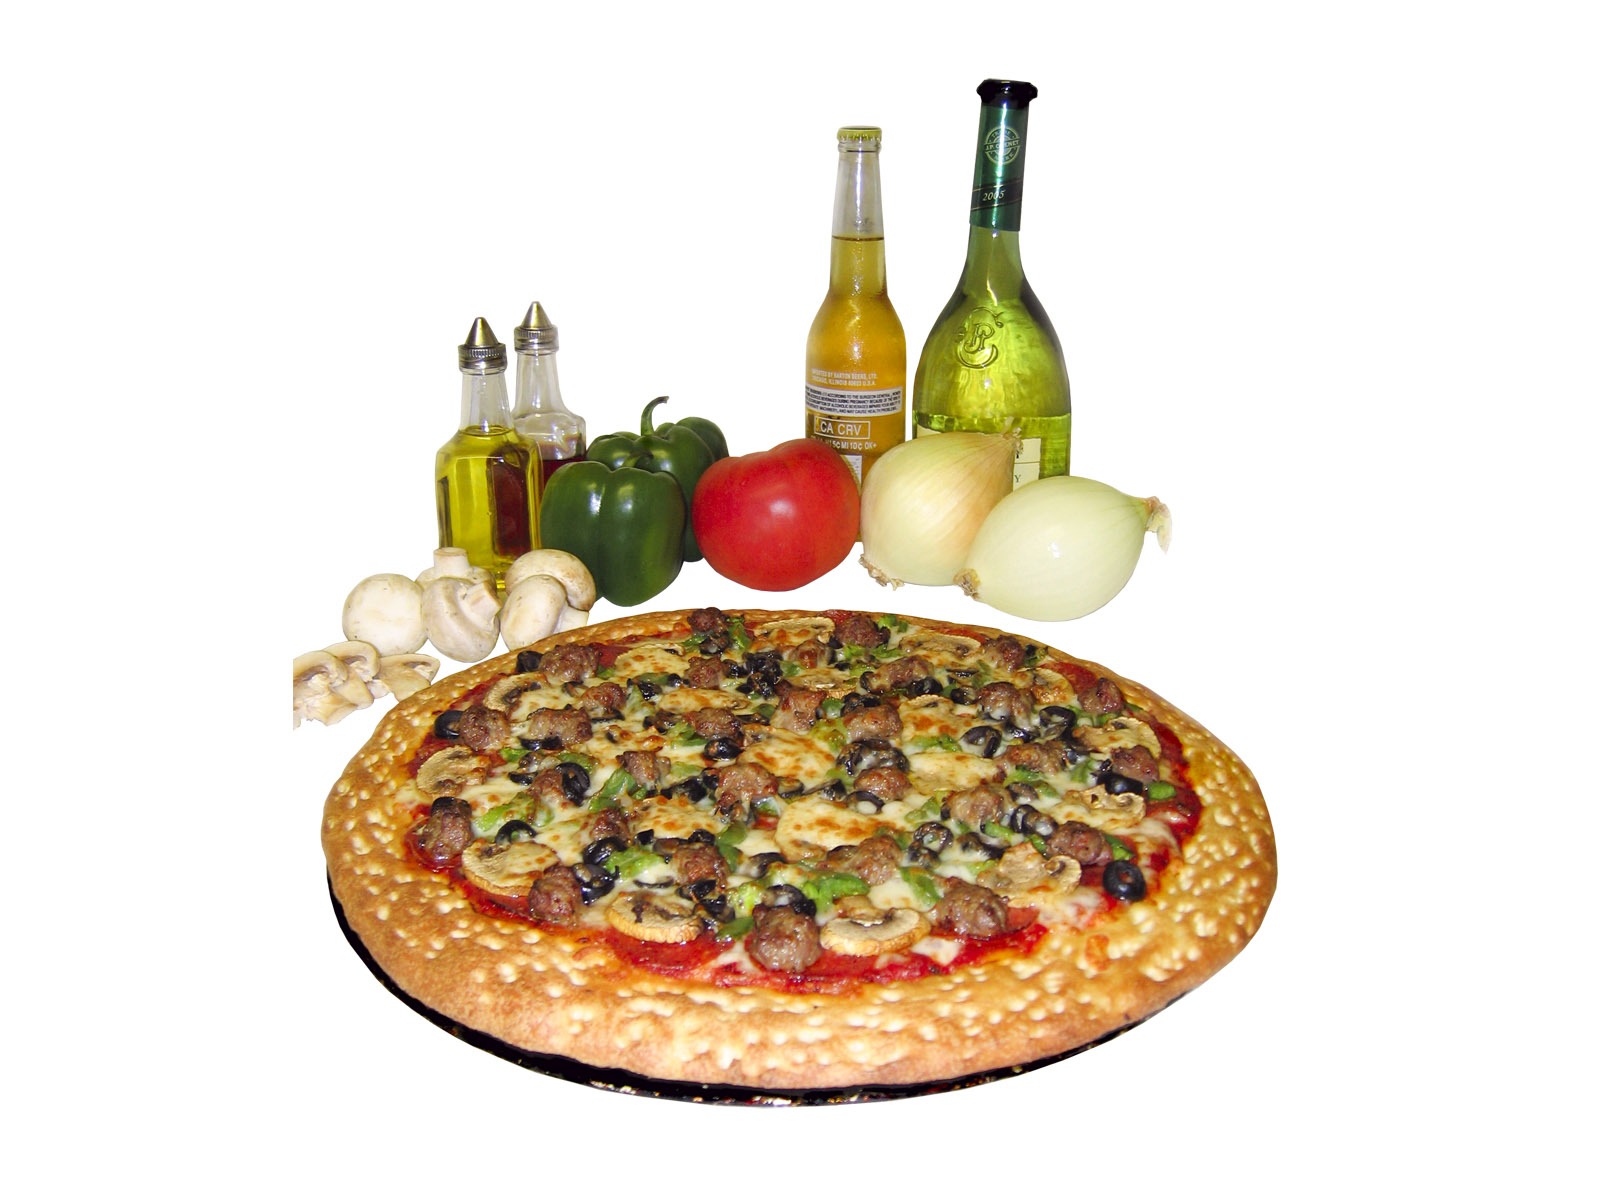 Fondos de pizzerías de Alimentos (3) #11 - 1600x1200